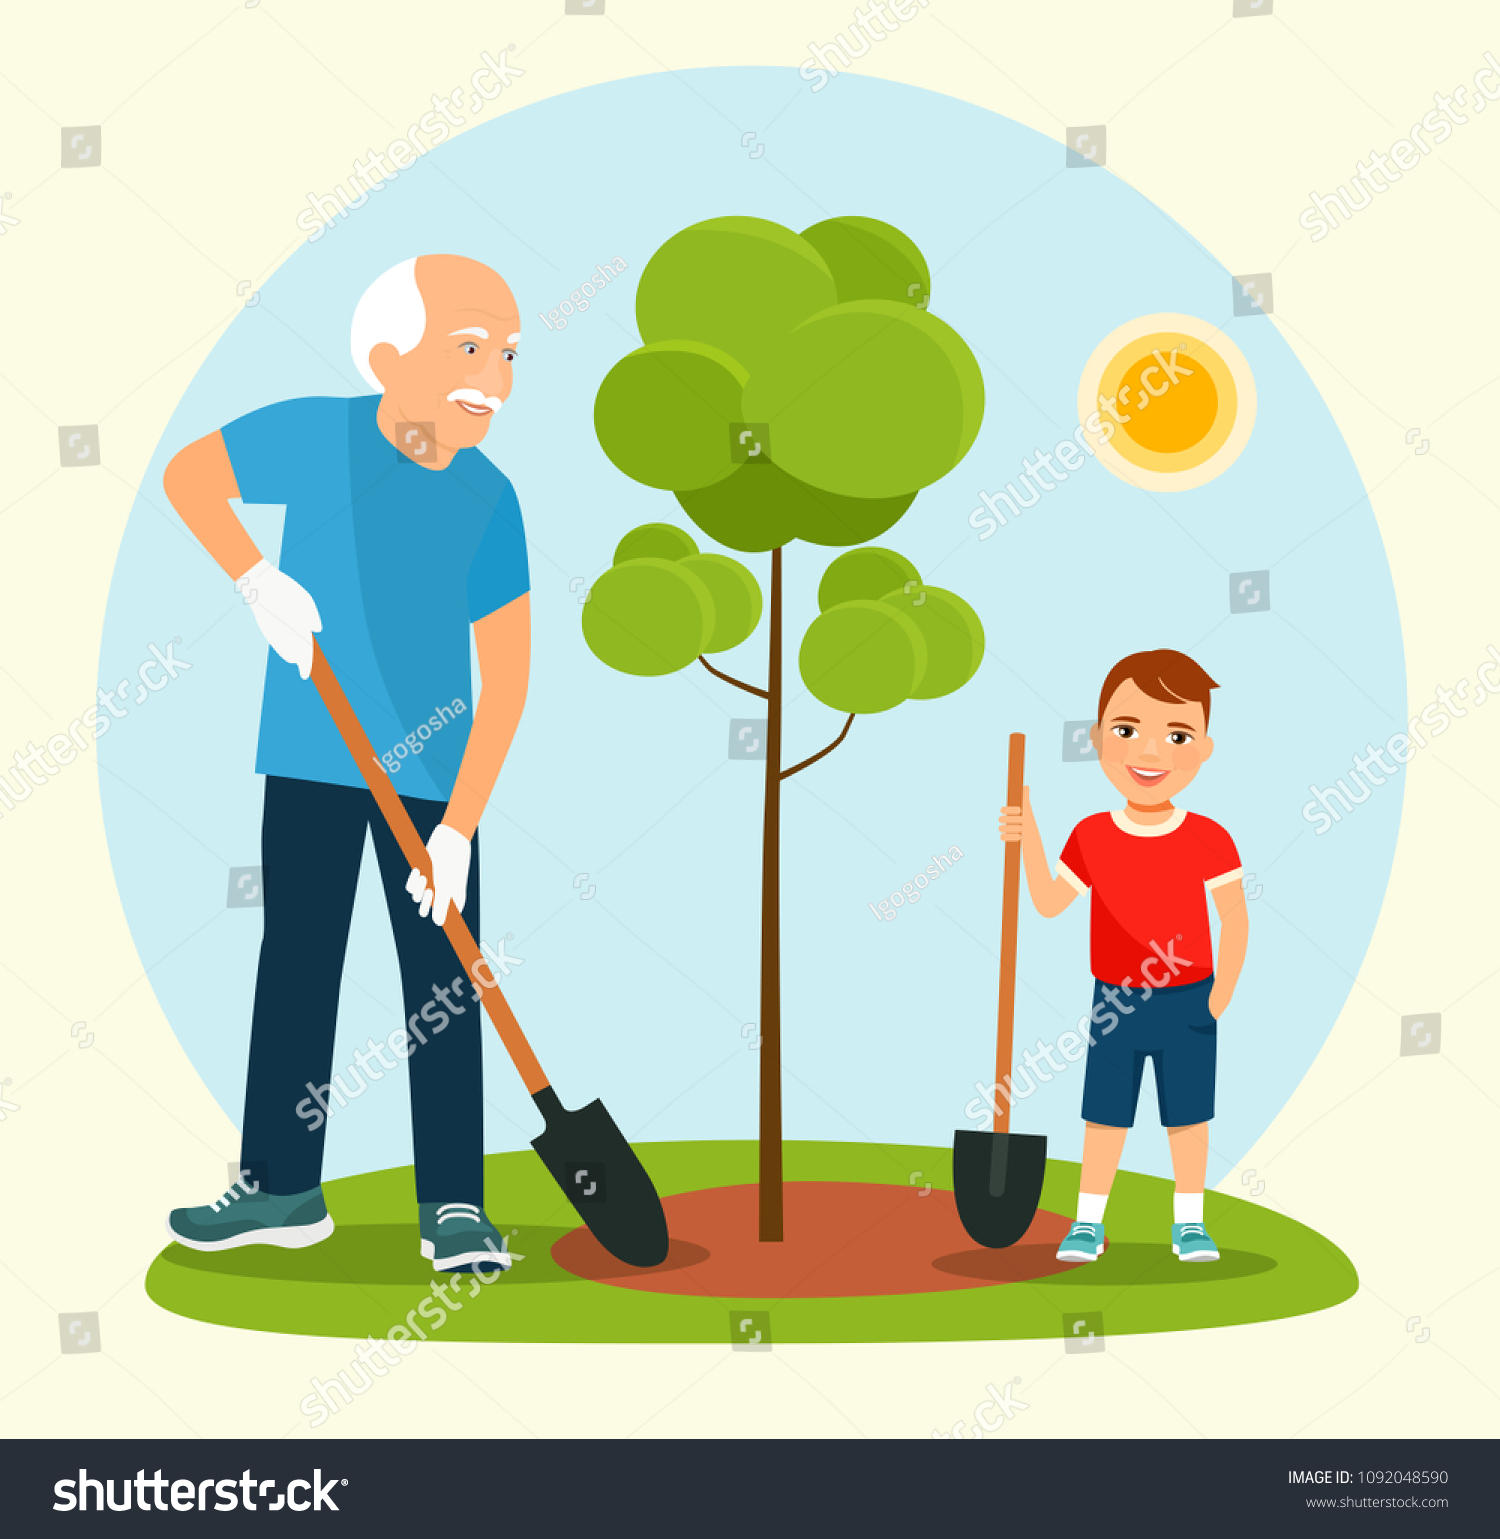 Дедушка посадил в нашем саду дерево. Дедушка сажает дерево. Внук и дедушка сажают дерево. Мальчик сажает дерево. Дети сажают деревья с дедушкой.